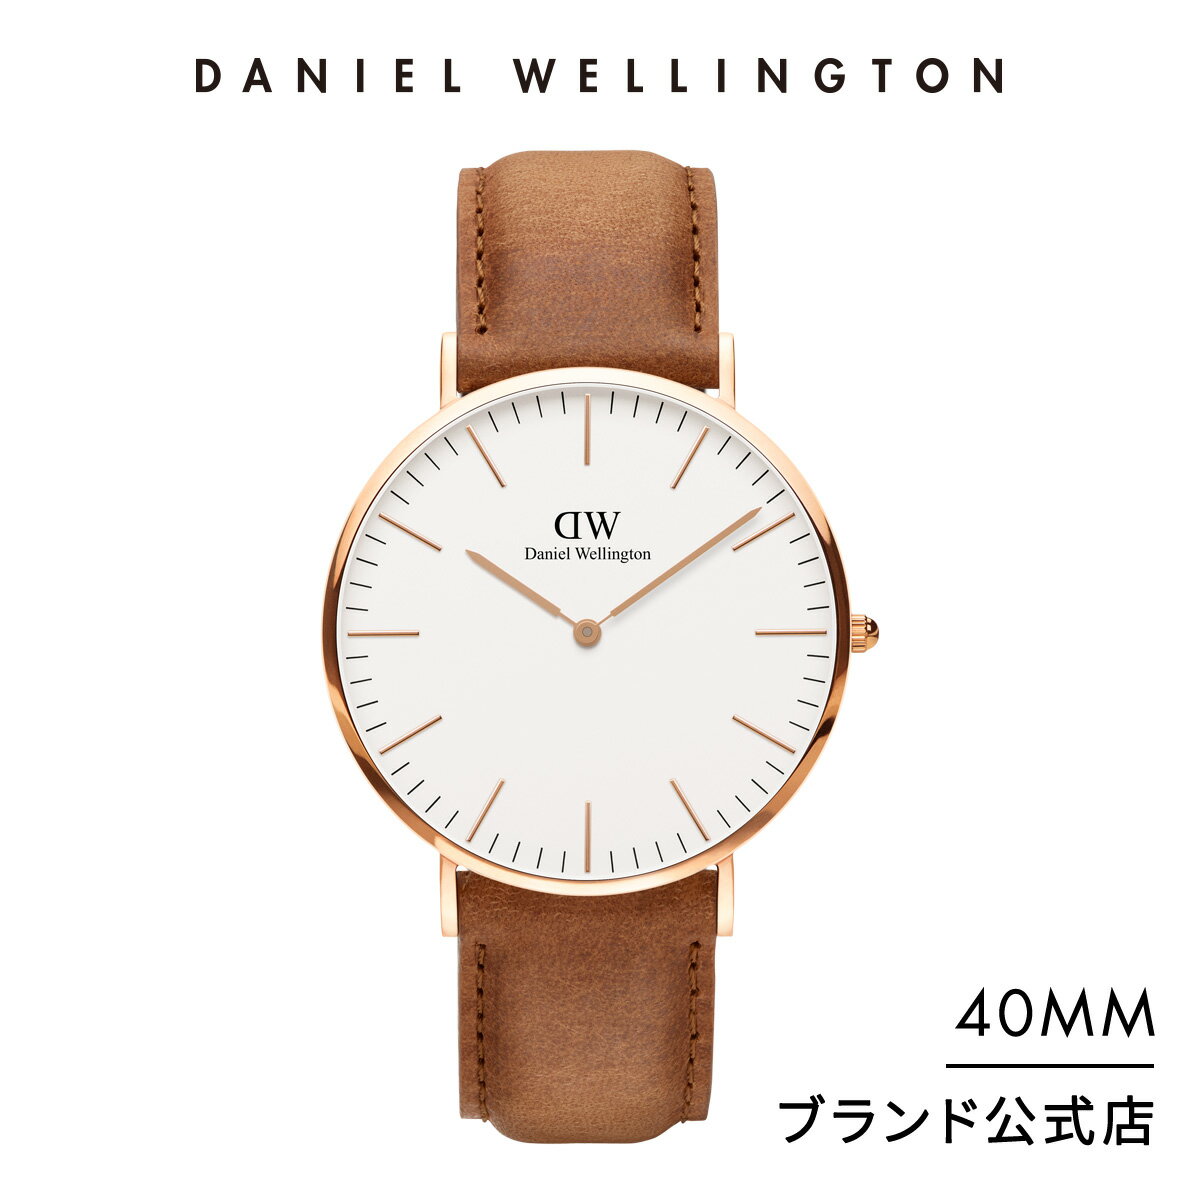 【公式2年保証/送料無料】ダニエルウェリントン公式 メンズ 腕時計 Classic Durham 40mm 革 ベルト クラシック ダラム DW プレゼント おしゃれ インスタ映え ブランド 彼女 彼氏 ペアスタイルに最適 ウォッチ